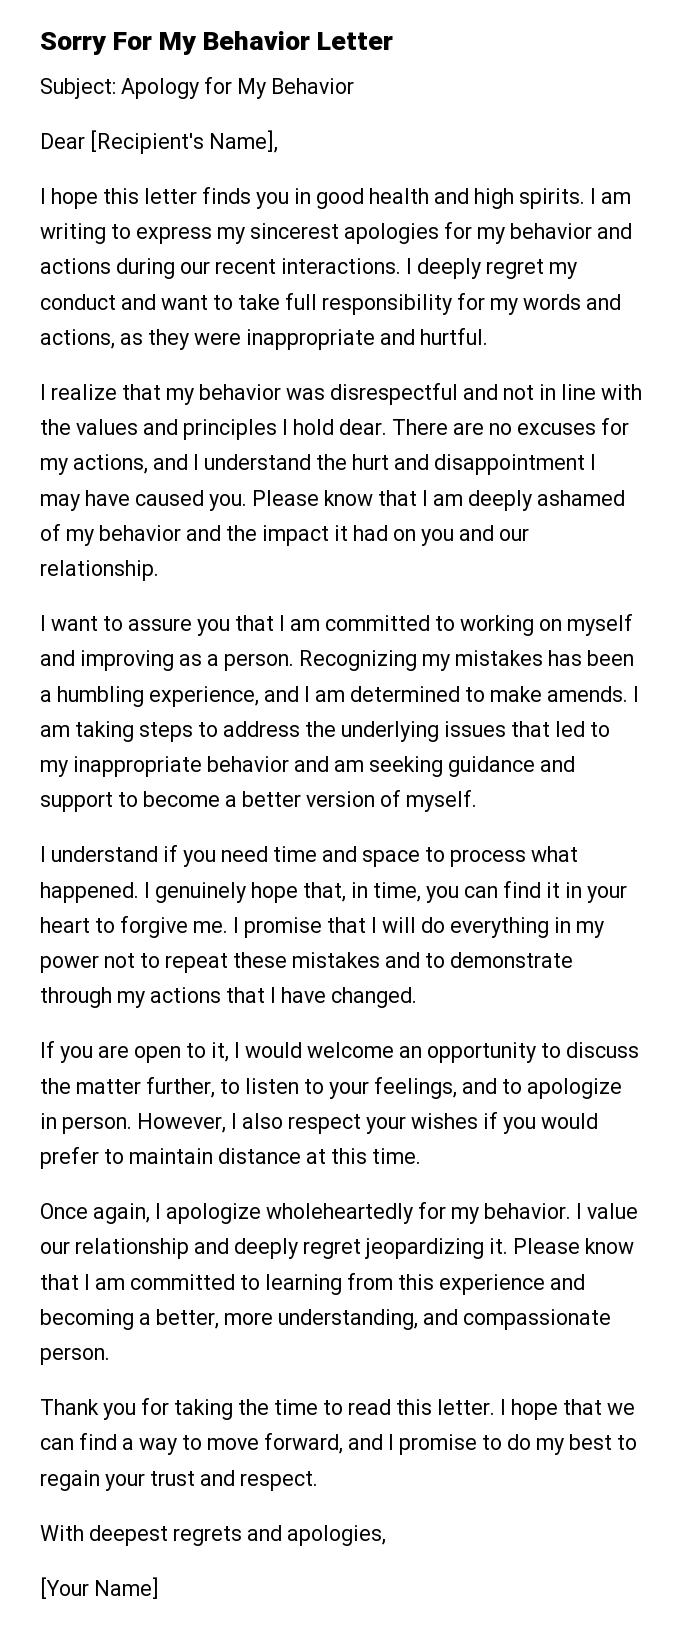 Sorry For My Behavior Letter